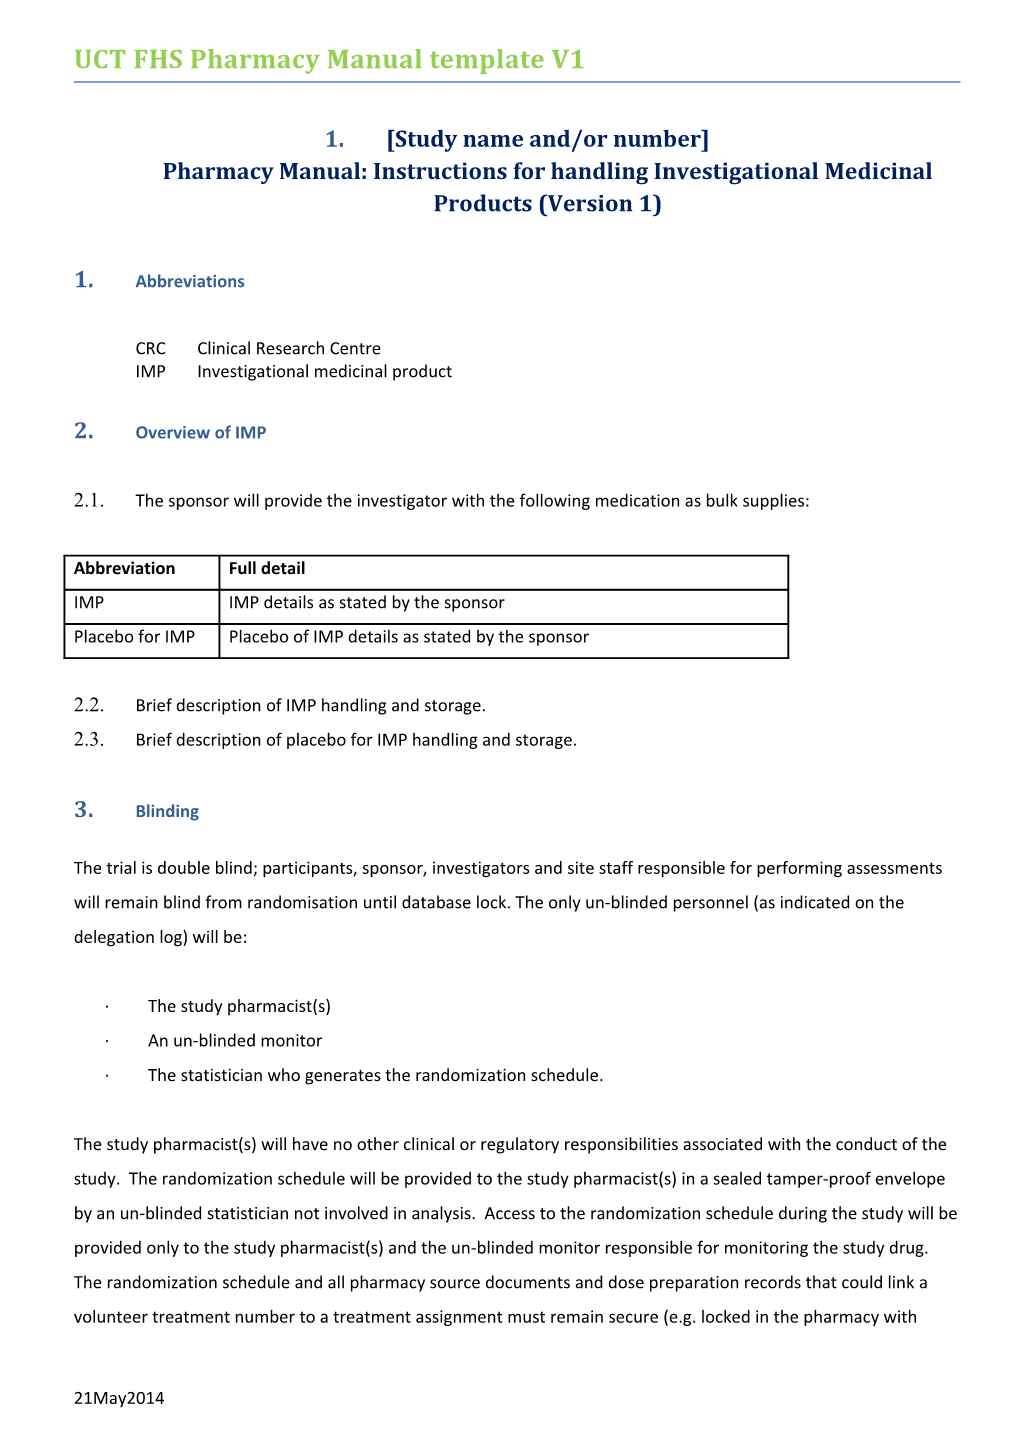 UCT FHS Pharmacy Manual Template V1